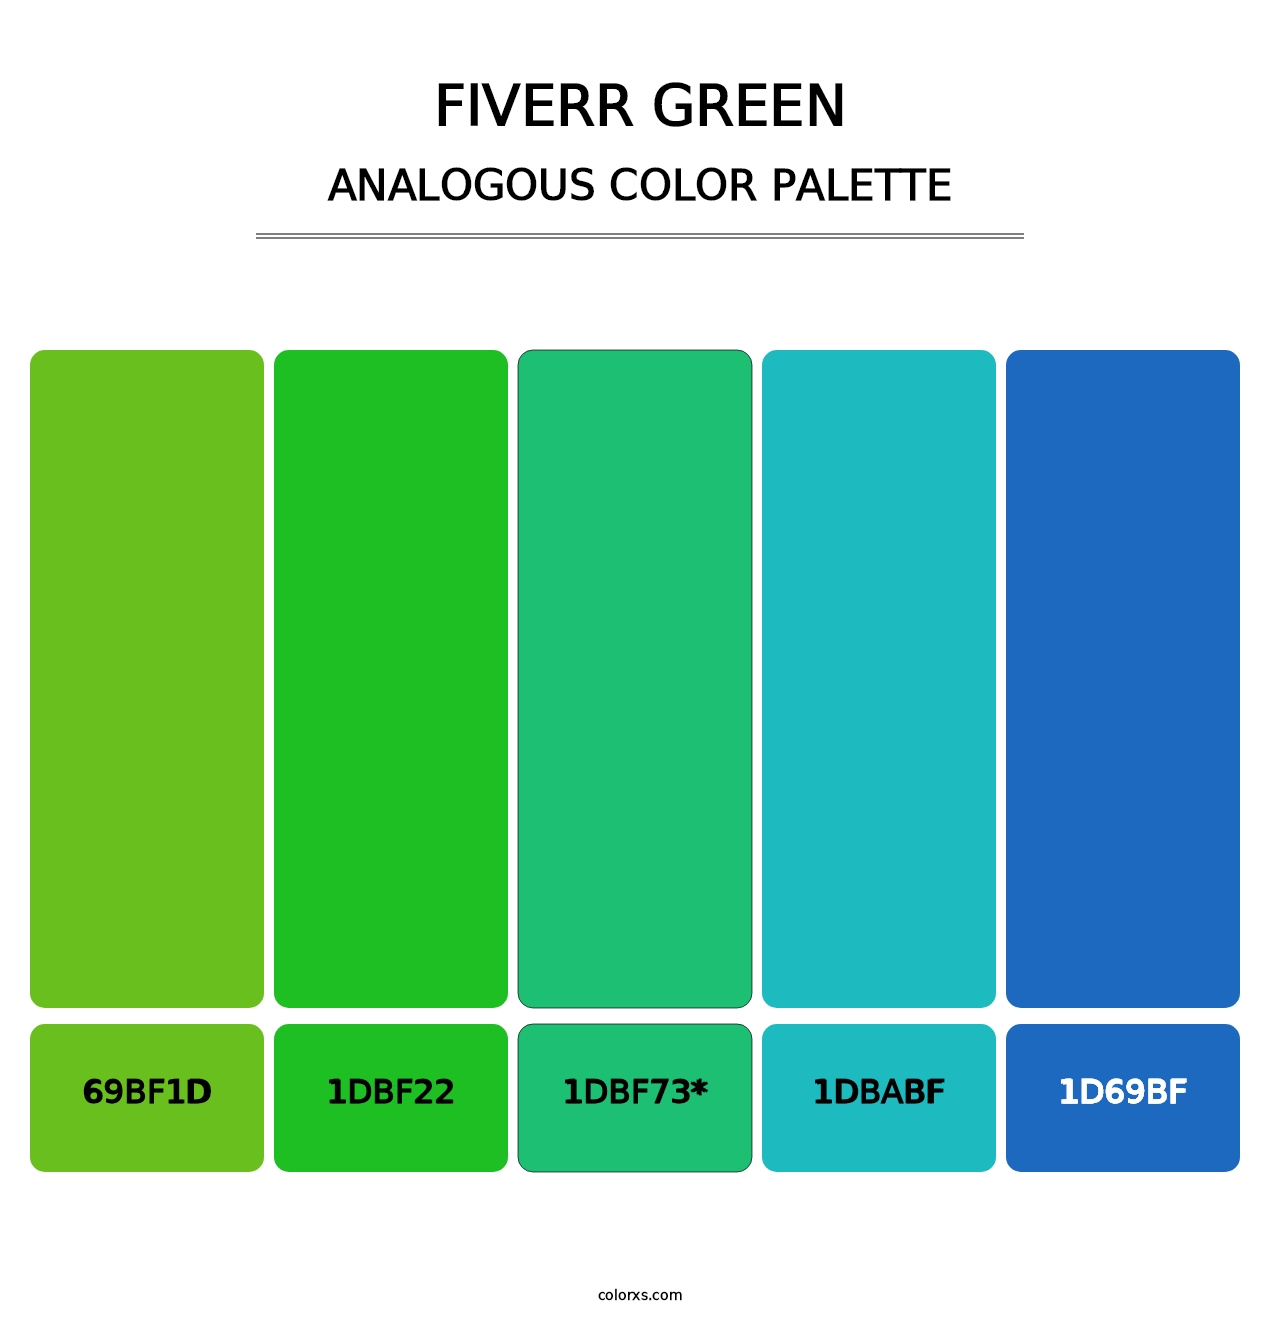 Fiverr Green - Analogous Color Palette